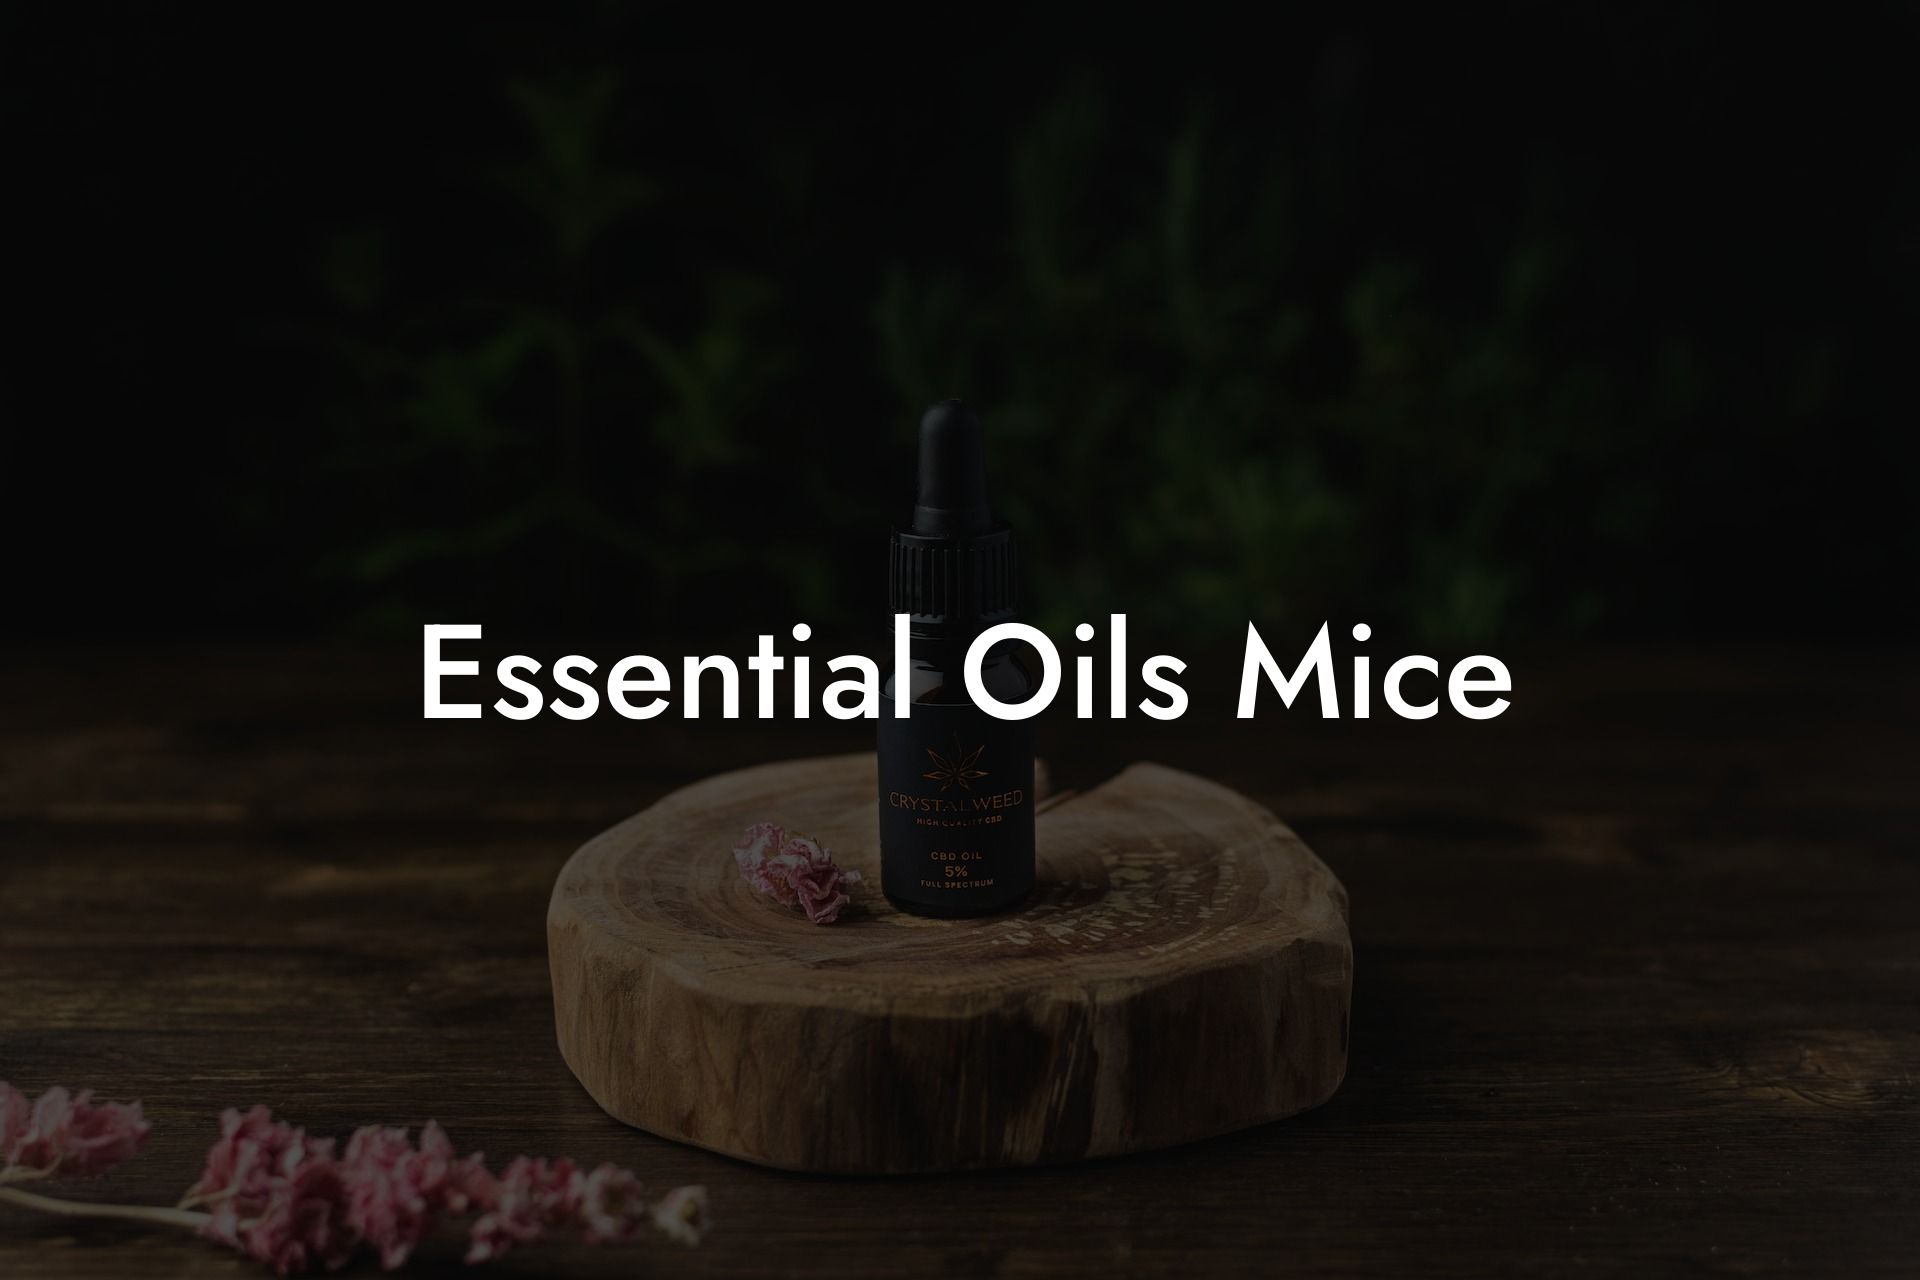 Essential Oils Mice